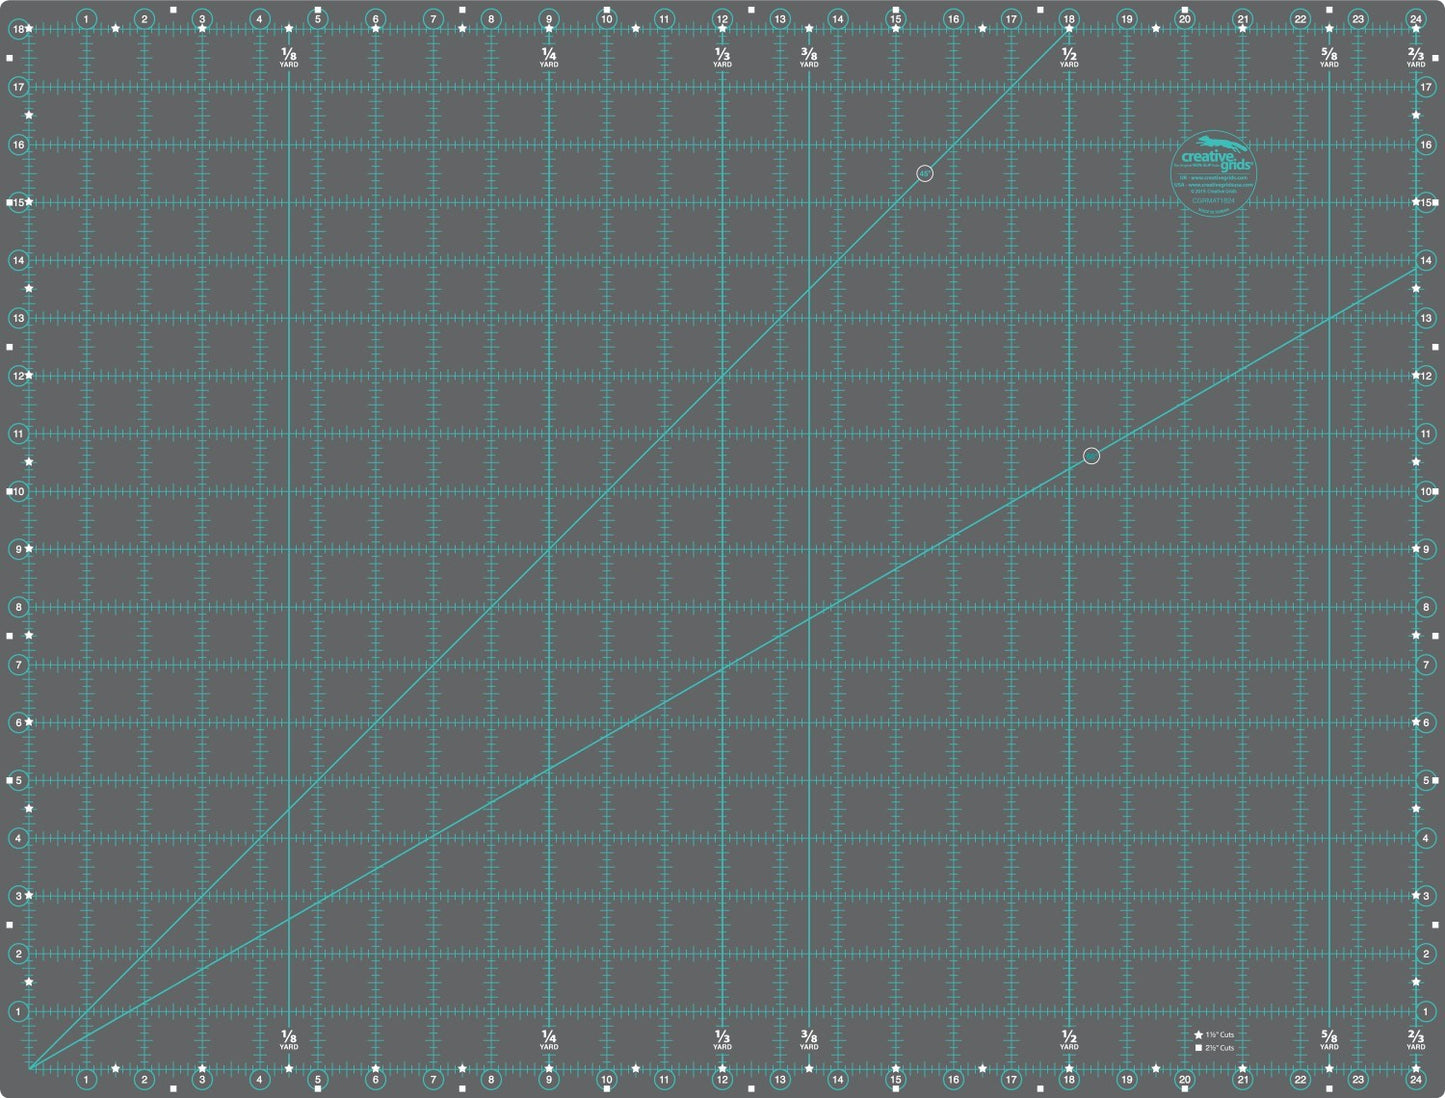 Creative Grids Cutting Mat 18in x 24in